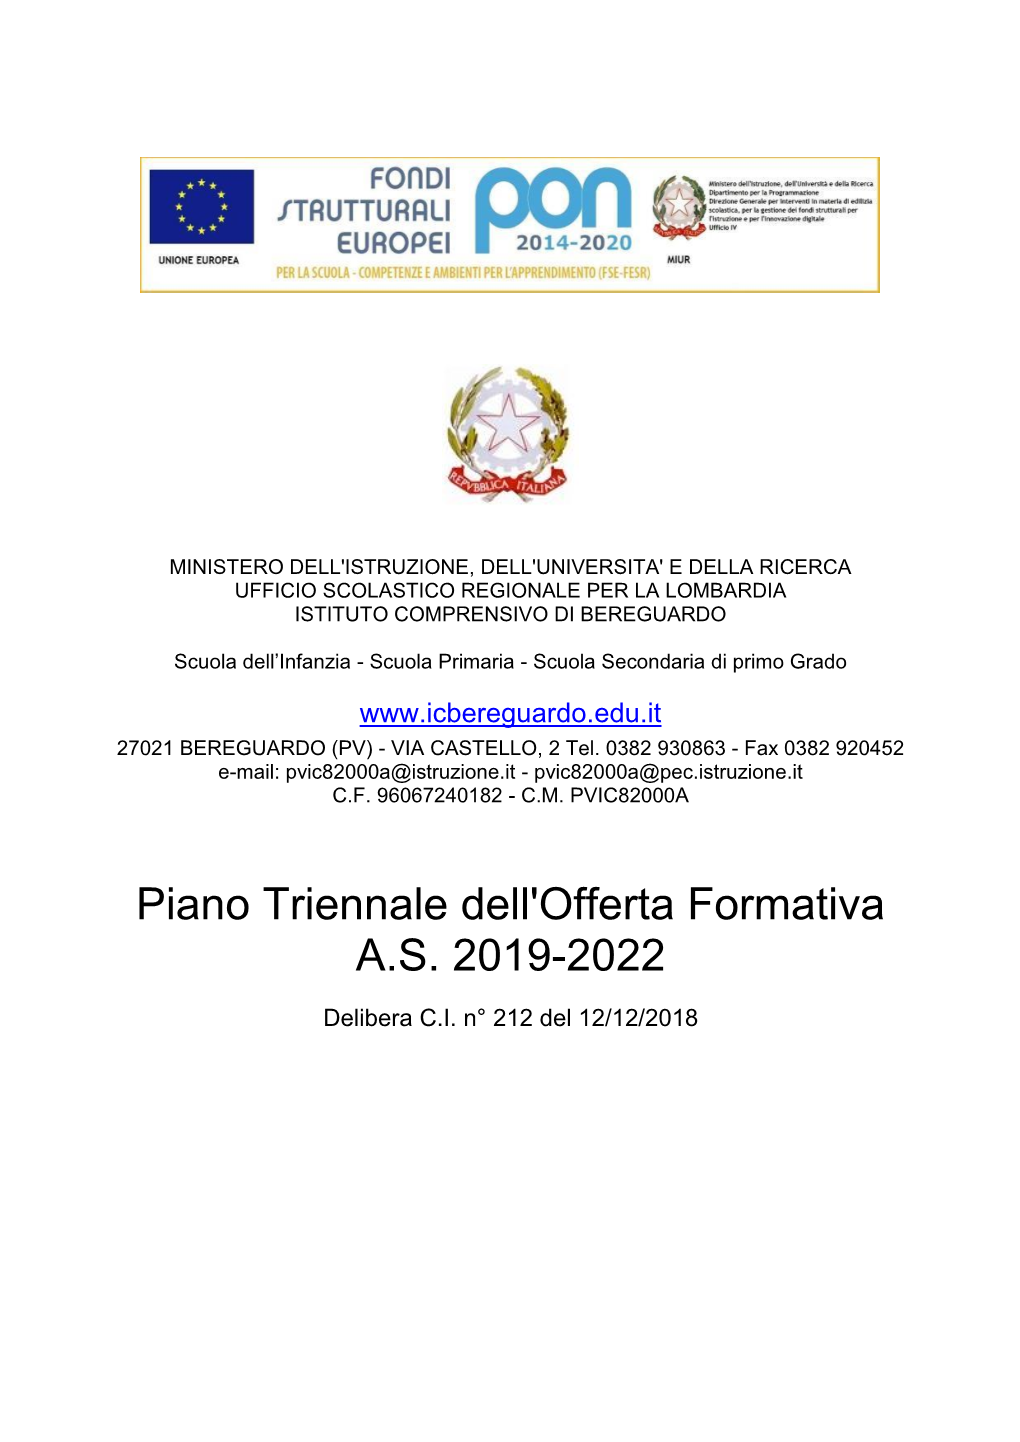 Piano Triennale Dell'offerta Formativa A.S. 2019-2022